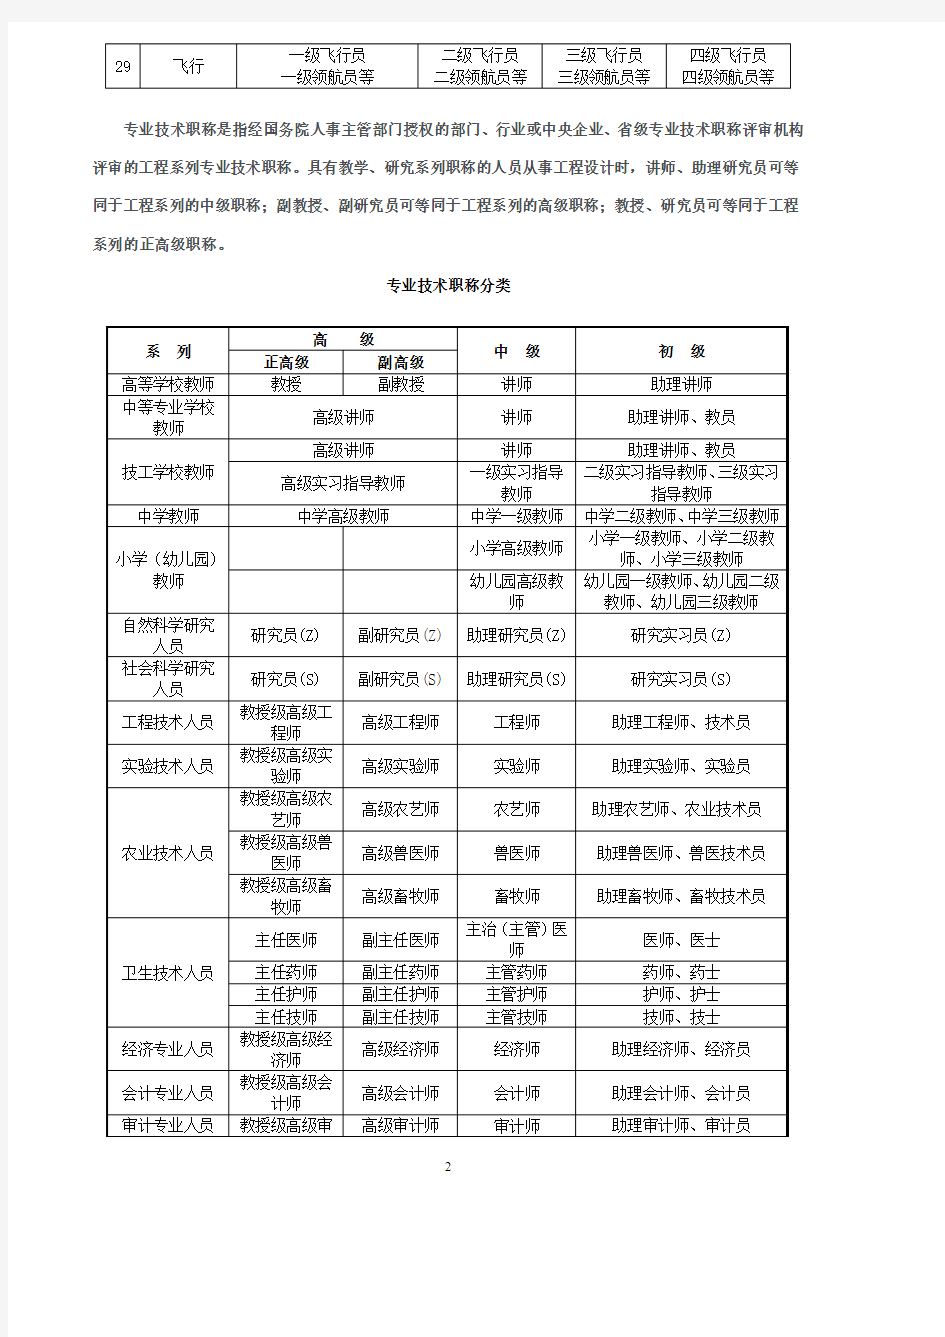 专业技术职称等级分类.pdf